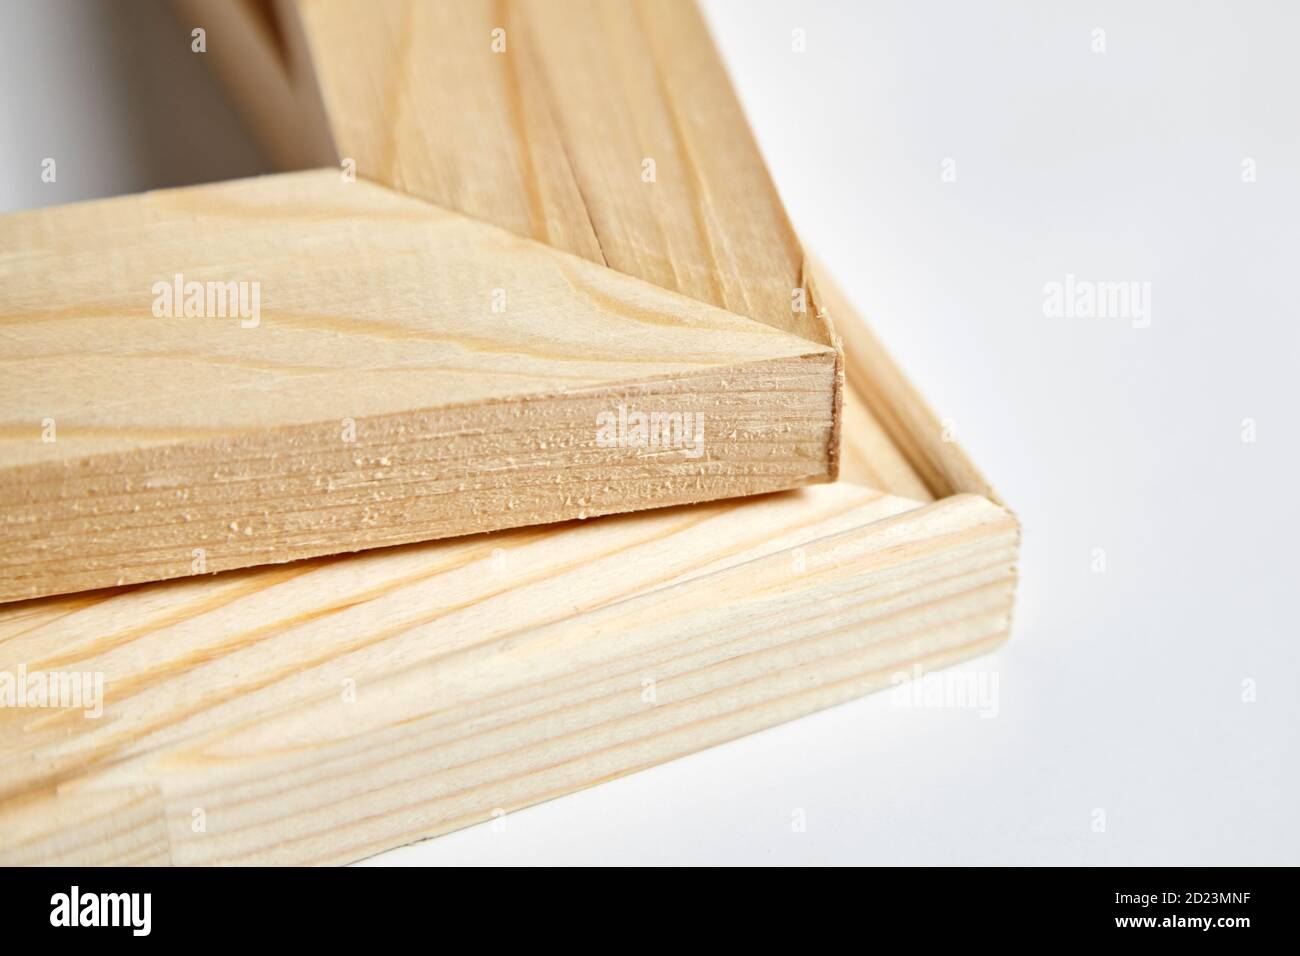 Holzbahre für Leinwand, Kanten verschiedener Arten, Ecken aus der Nähe  Stockfotografie - Alamy